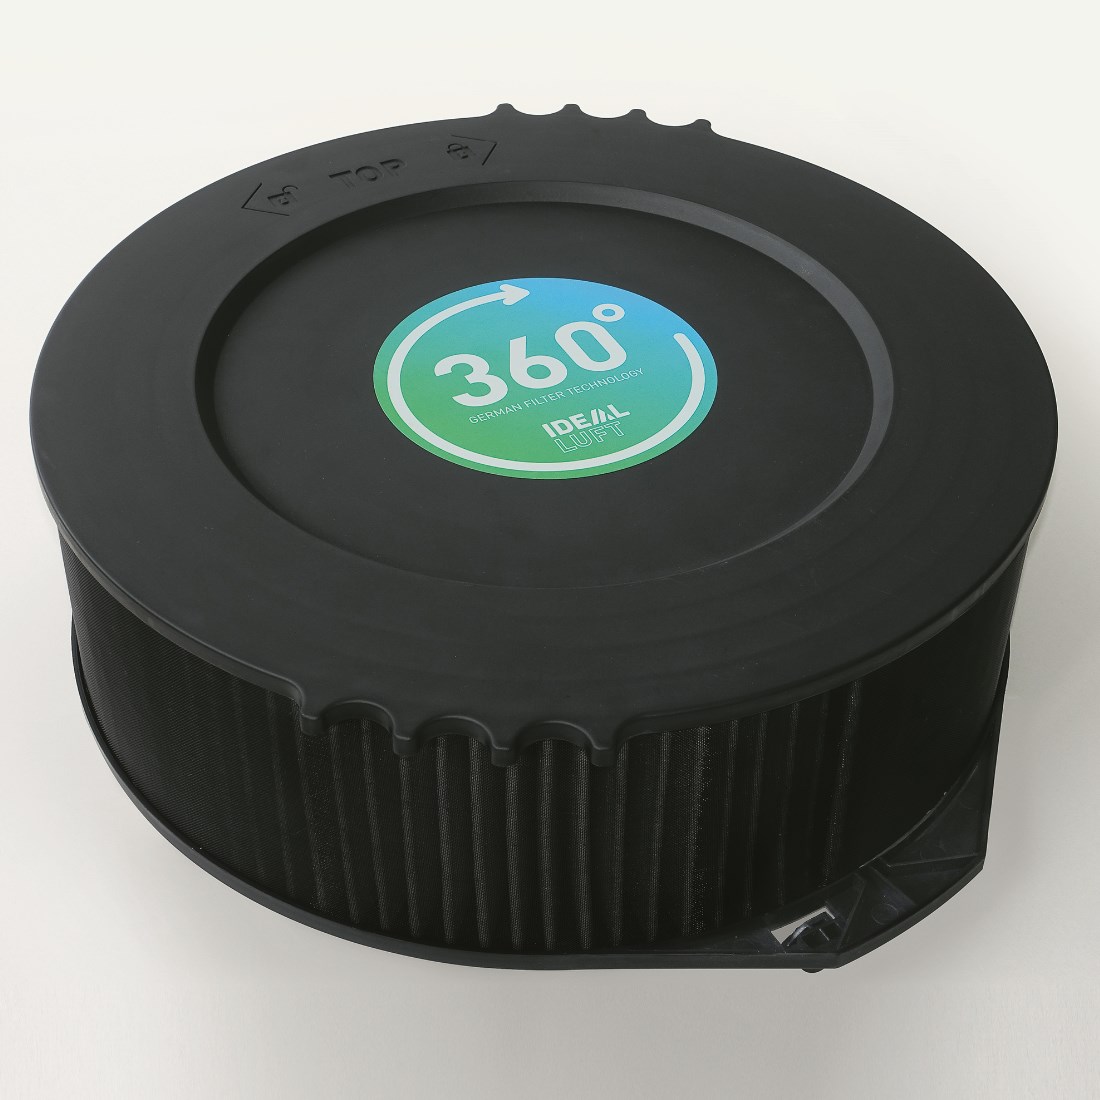 IDEAL AP 60 Pro Oczyszczacz powietrza filtry